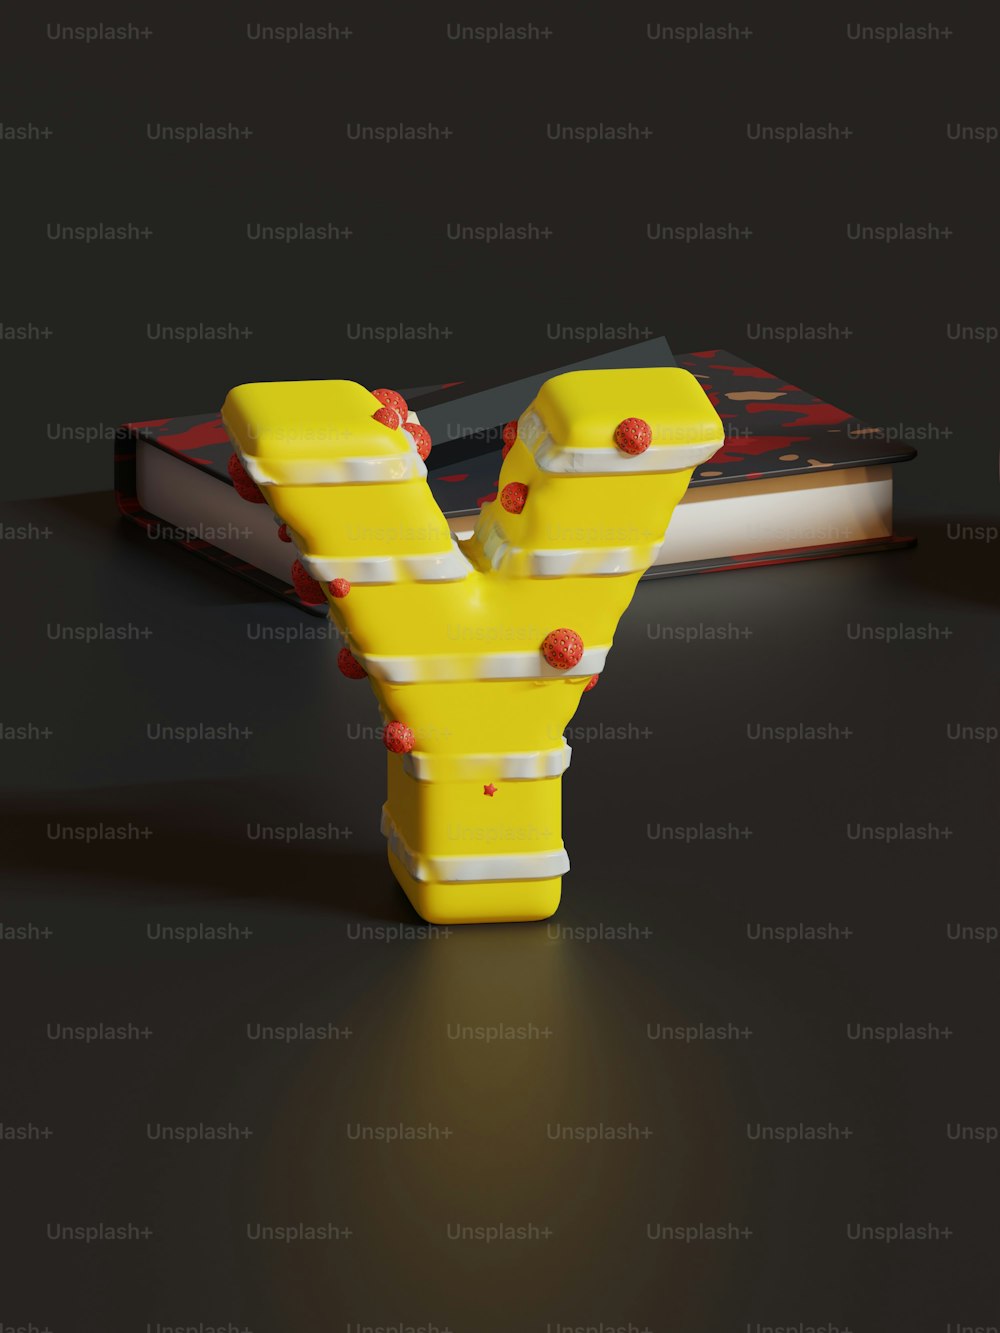 Ein gelbes Objekt, das auf einem Tisch sitzt